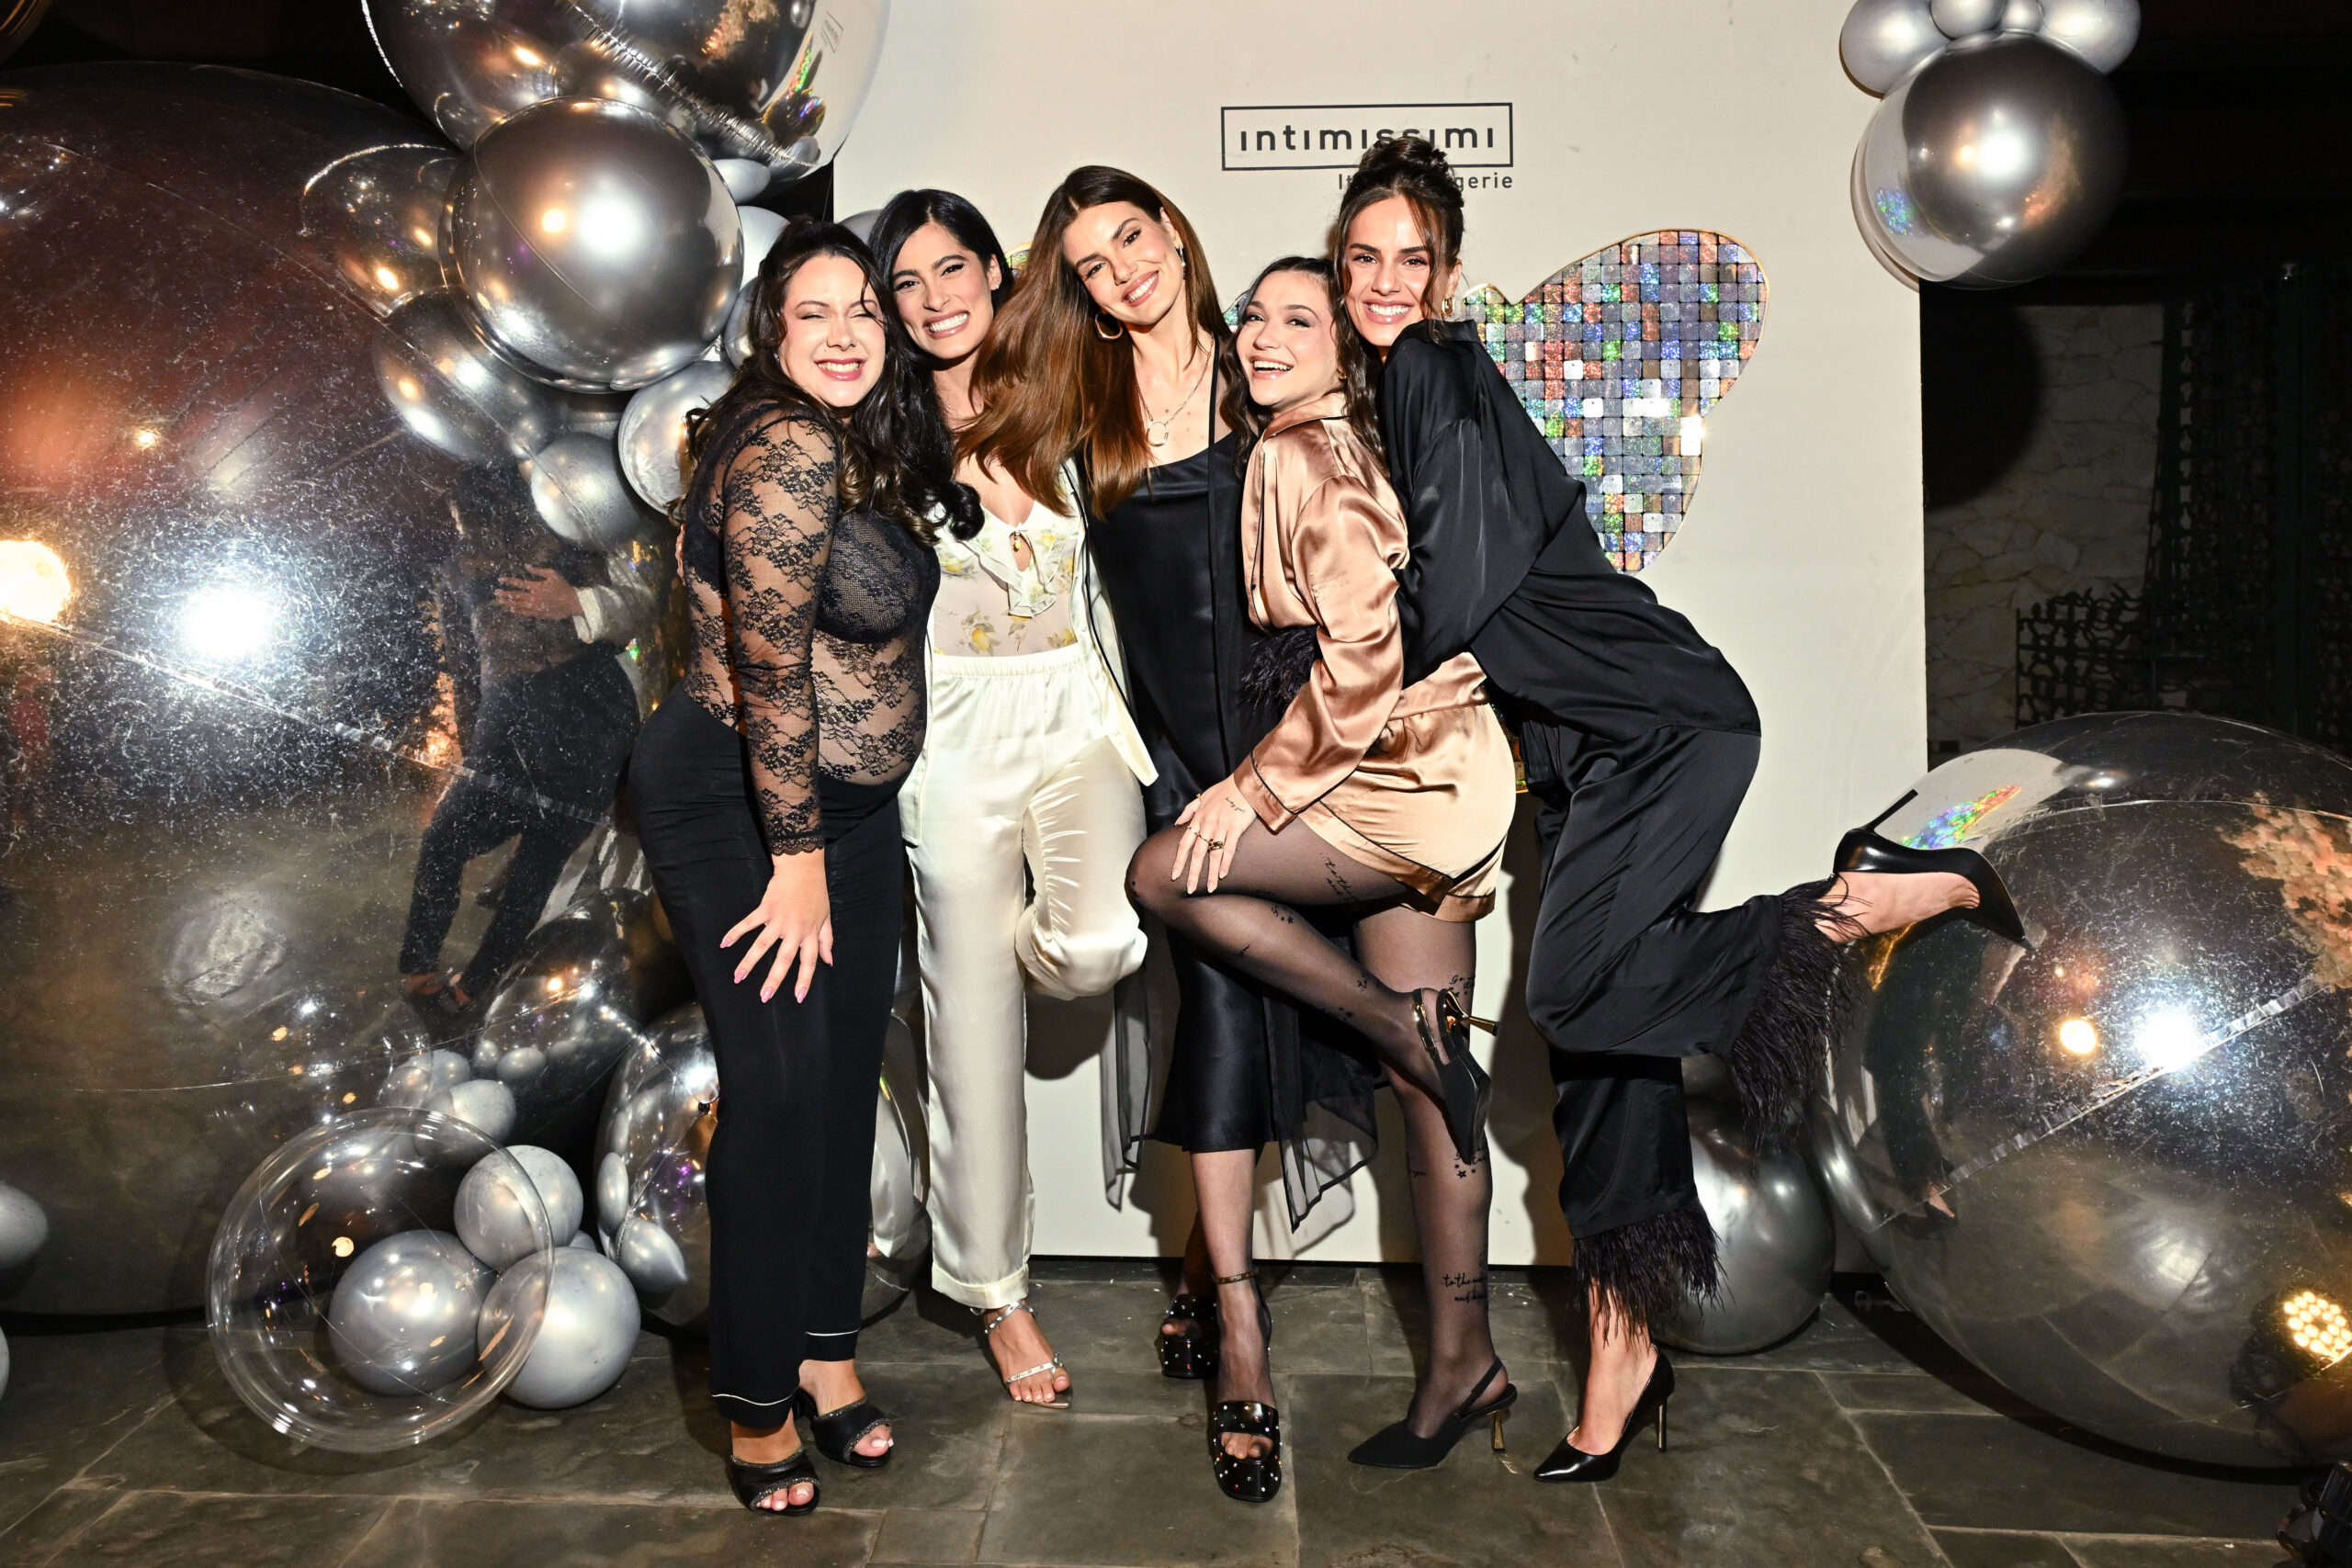 Intimissimi promove sua tradicional festa do pijama apresentada pela embaixadora da marca, a atriz Camila Queiroz